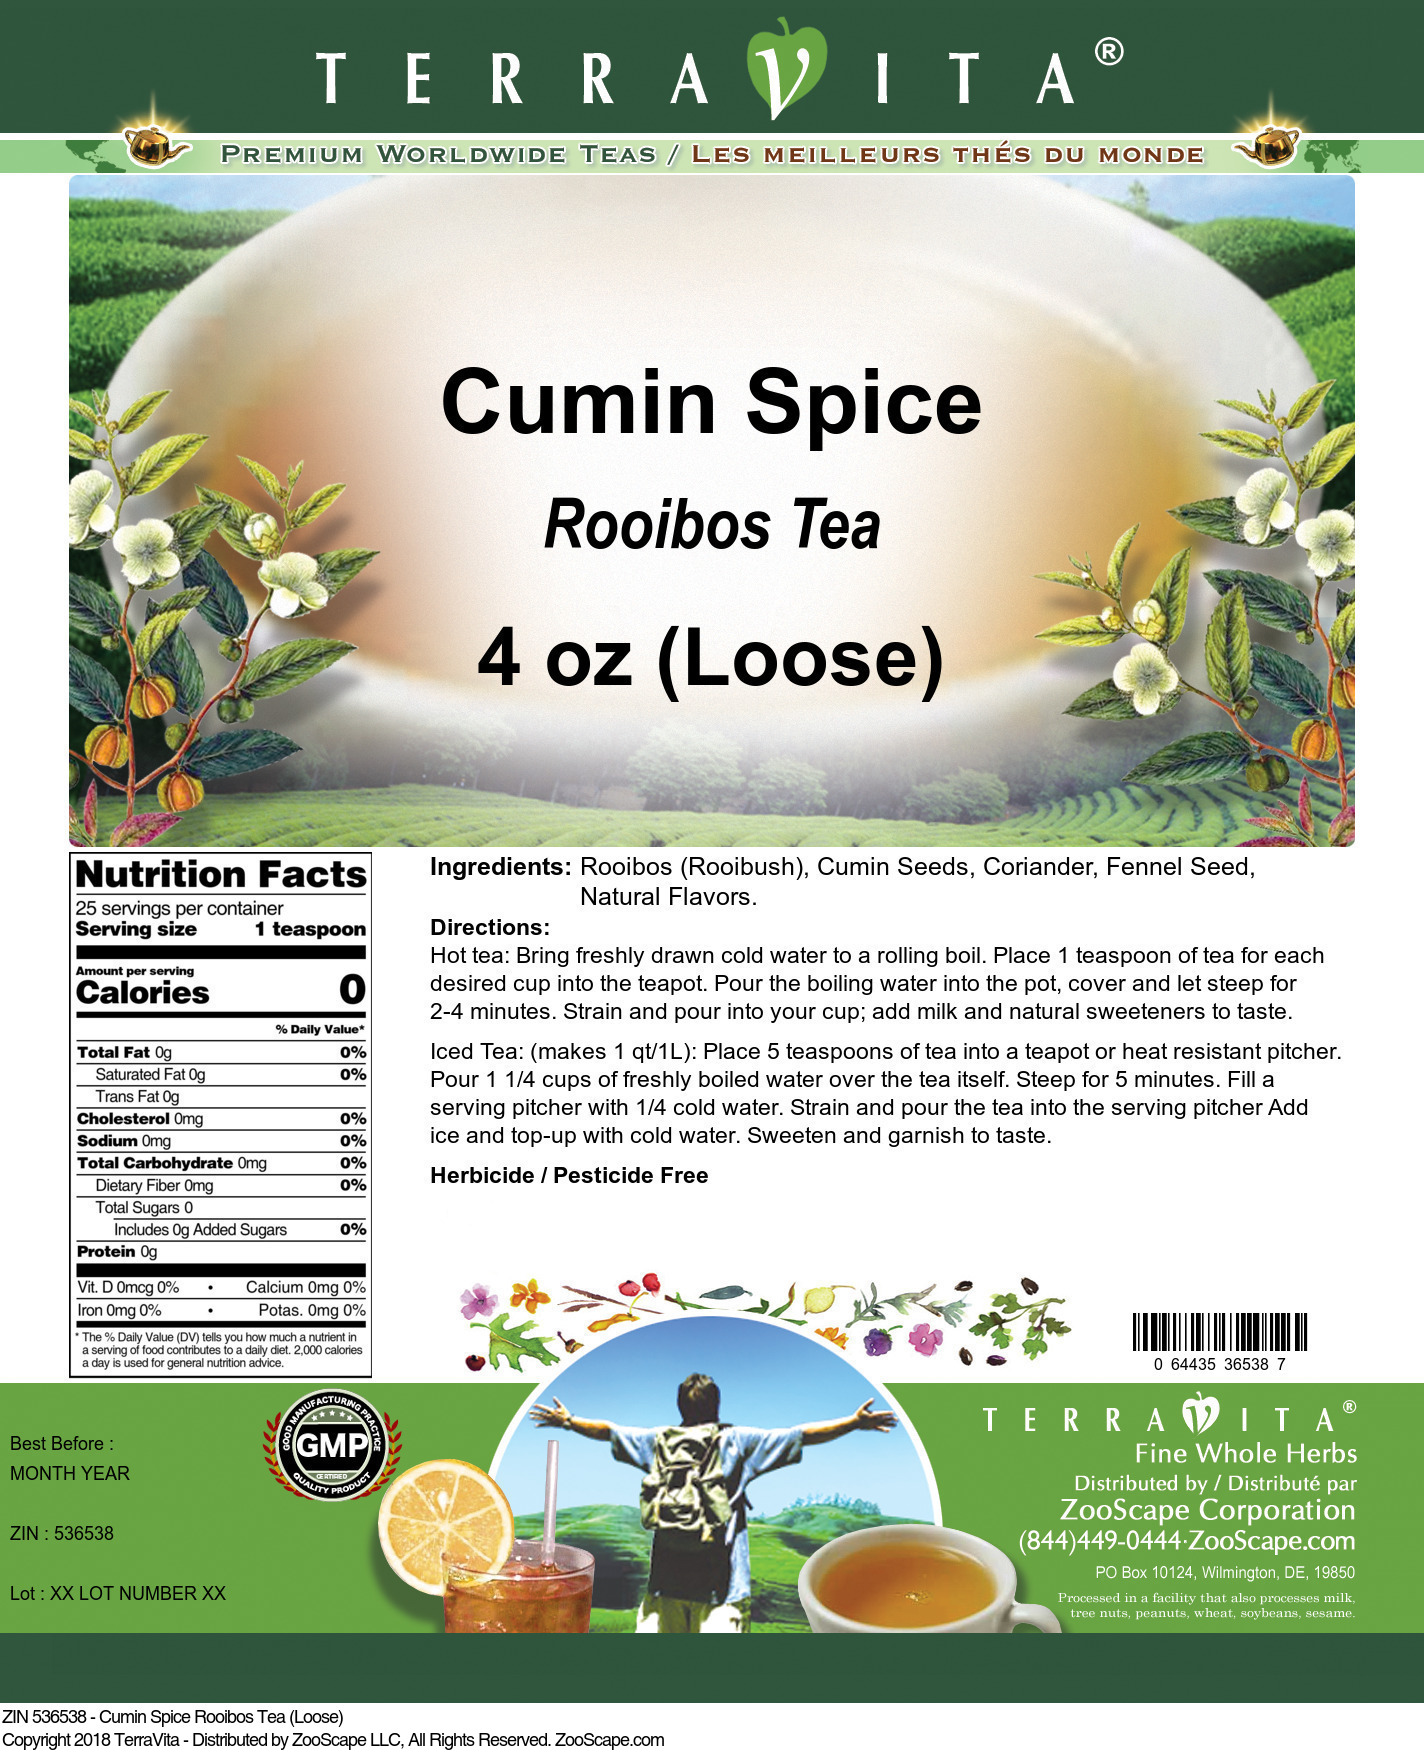 Cumin Spice Rooibos Tea (Loose) - Label